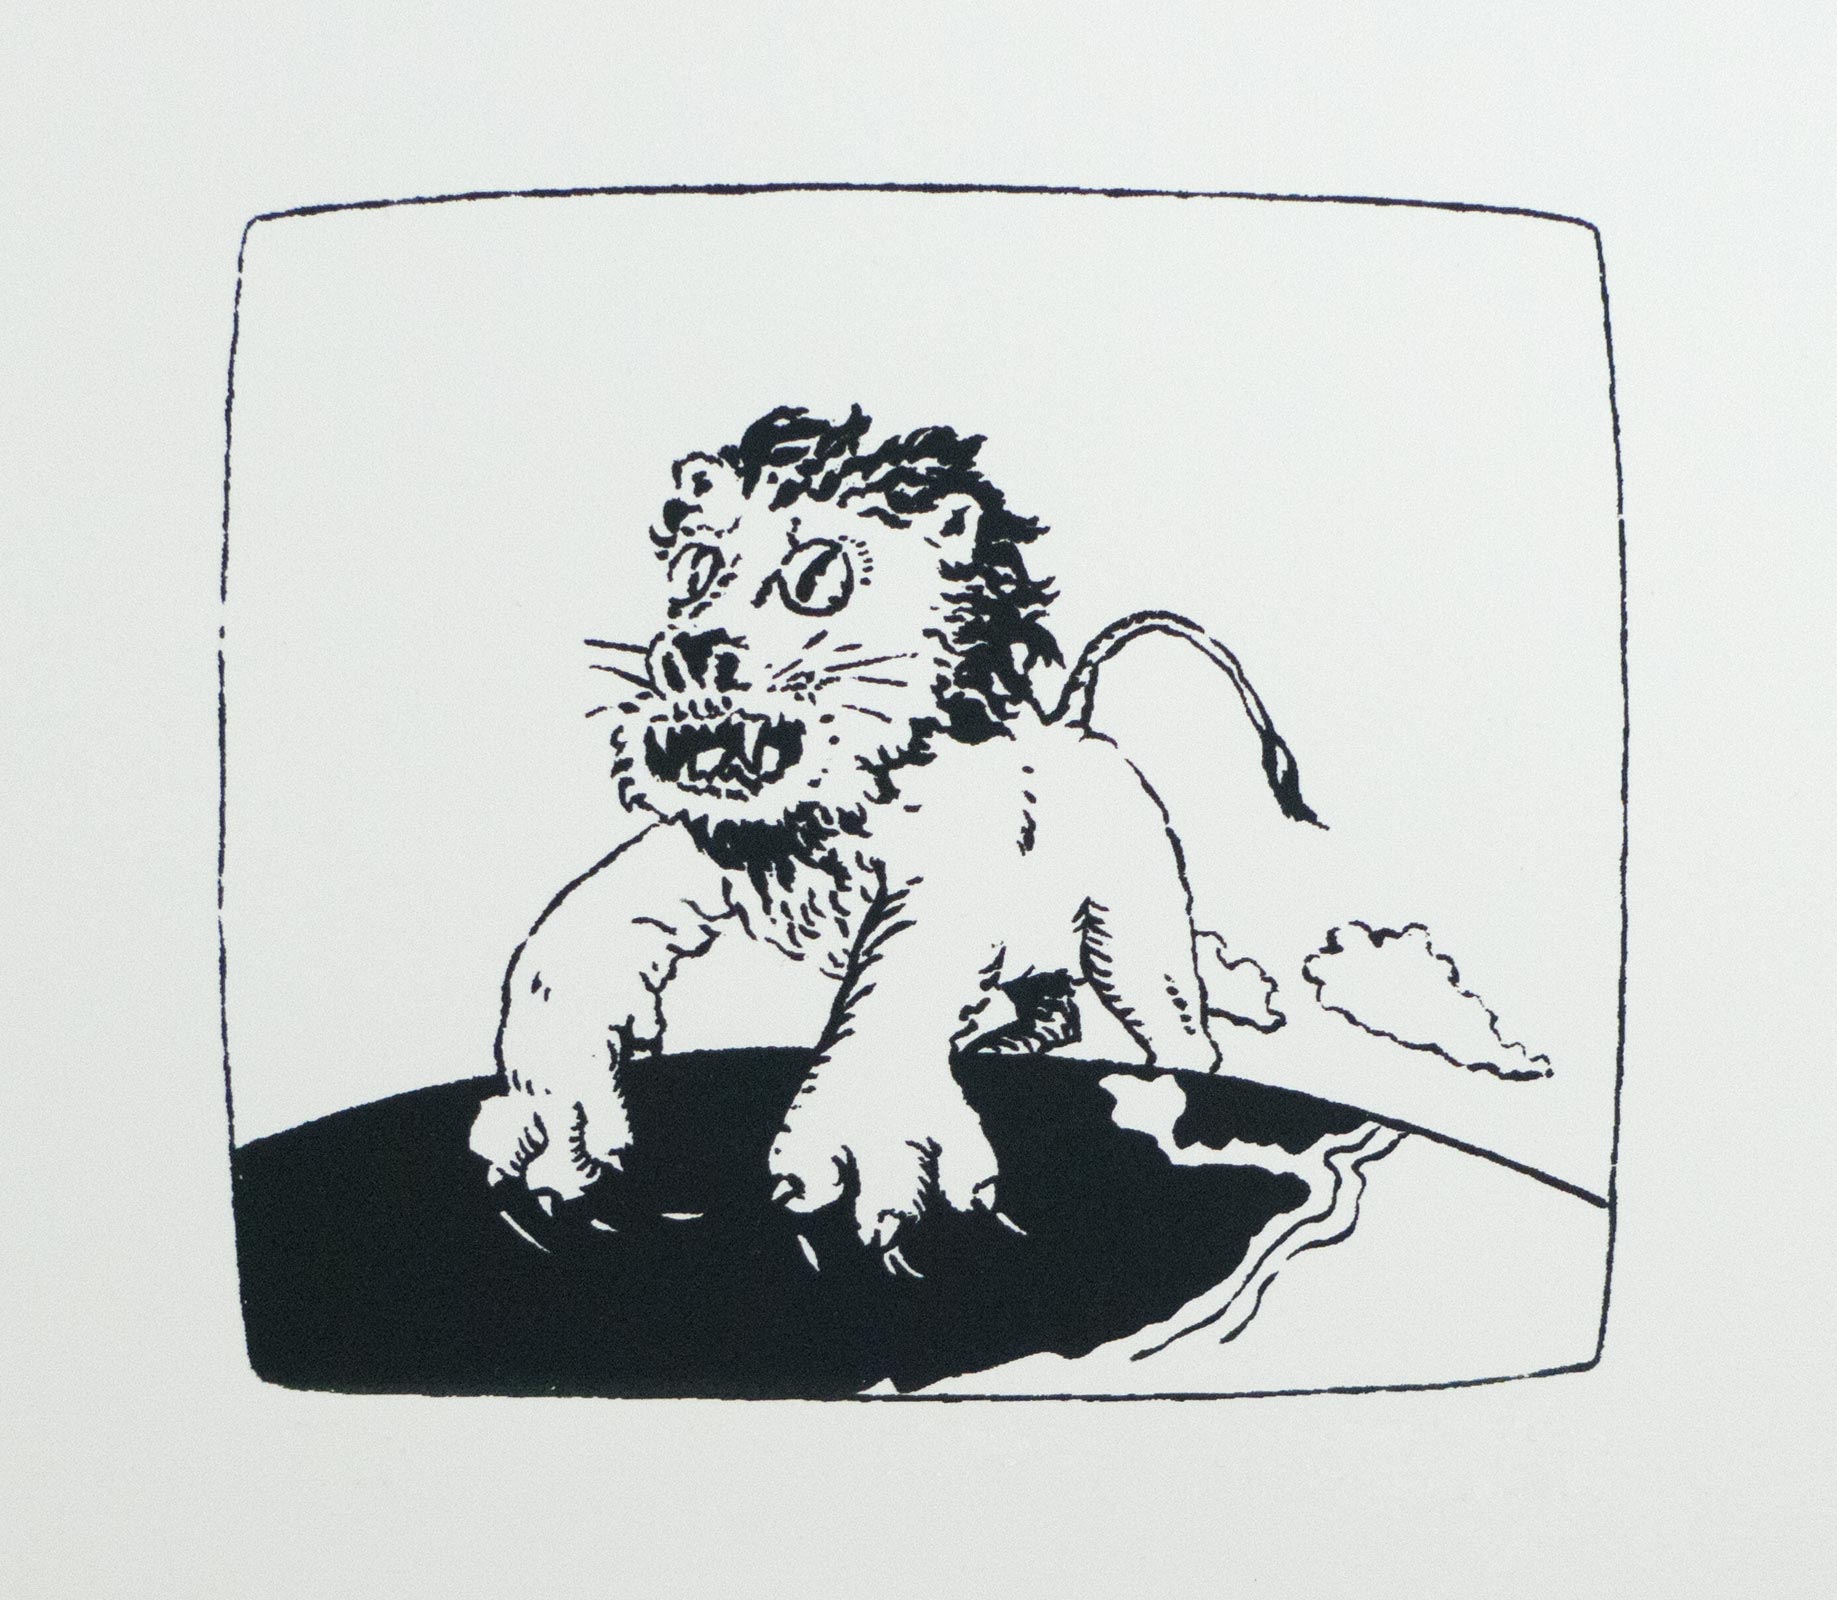 Lion (Kimba); 1983; silkscreen print; edition of 40; image size 6” x 7”